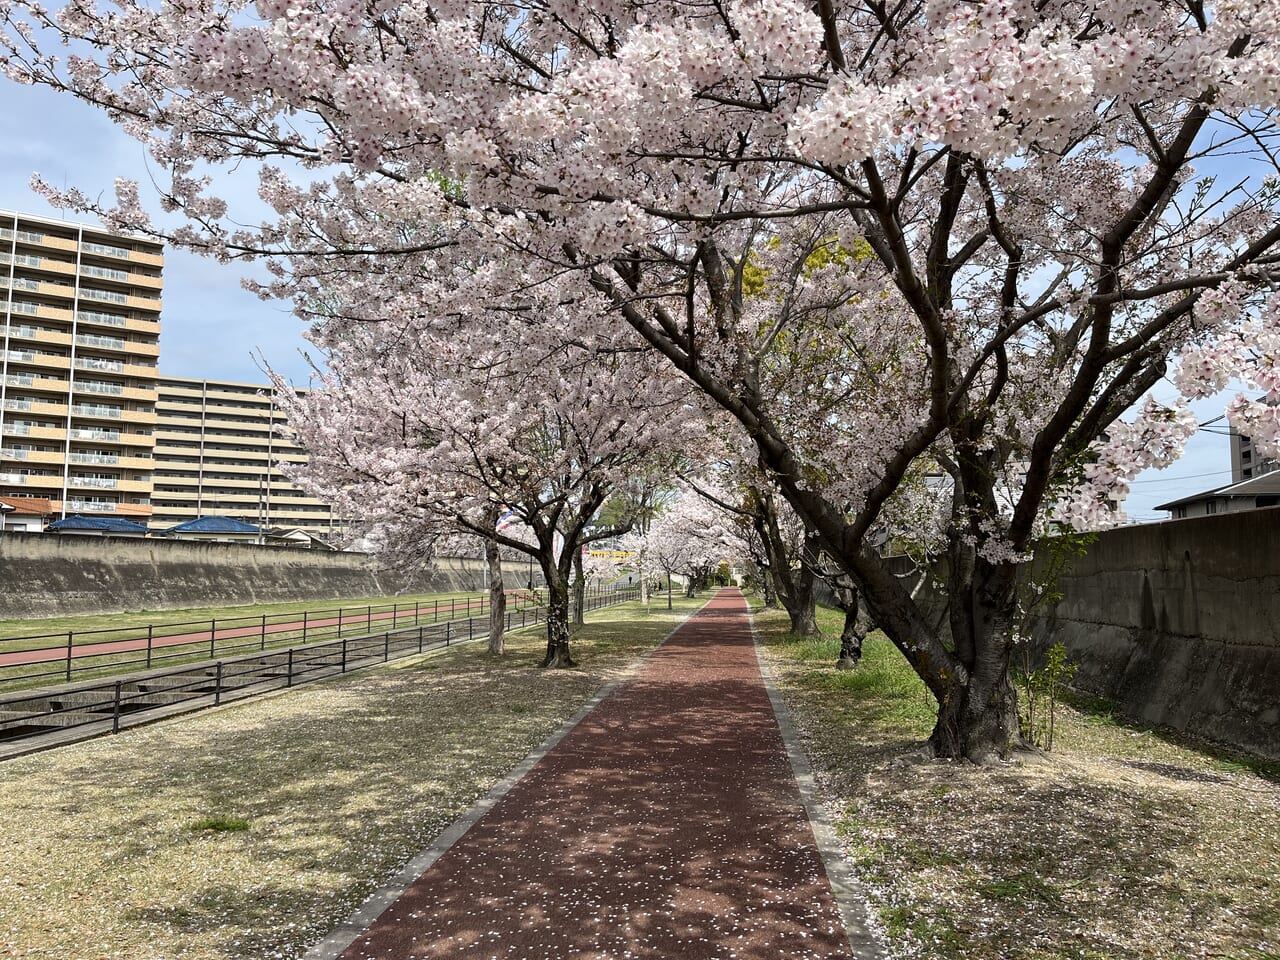 黒崎憩いの遊歩道の桜のトンネル